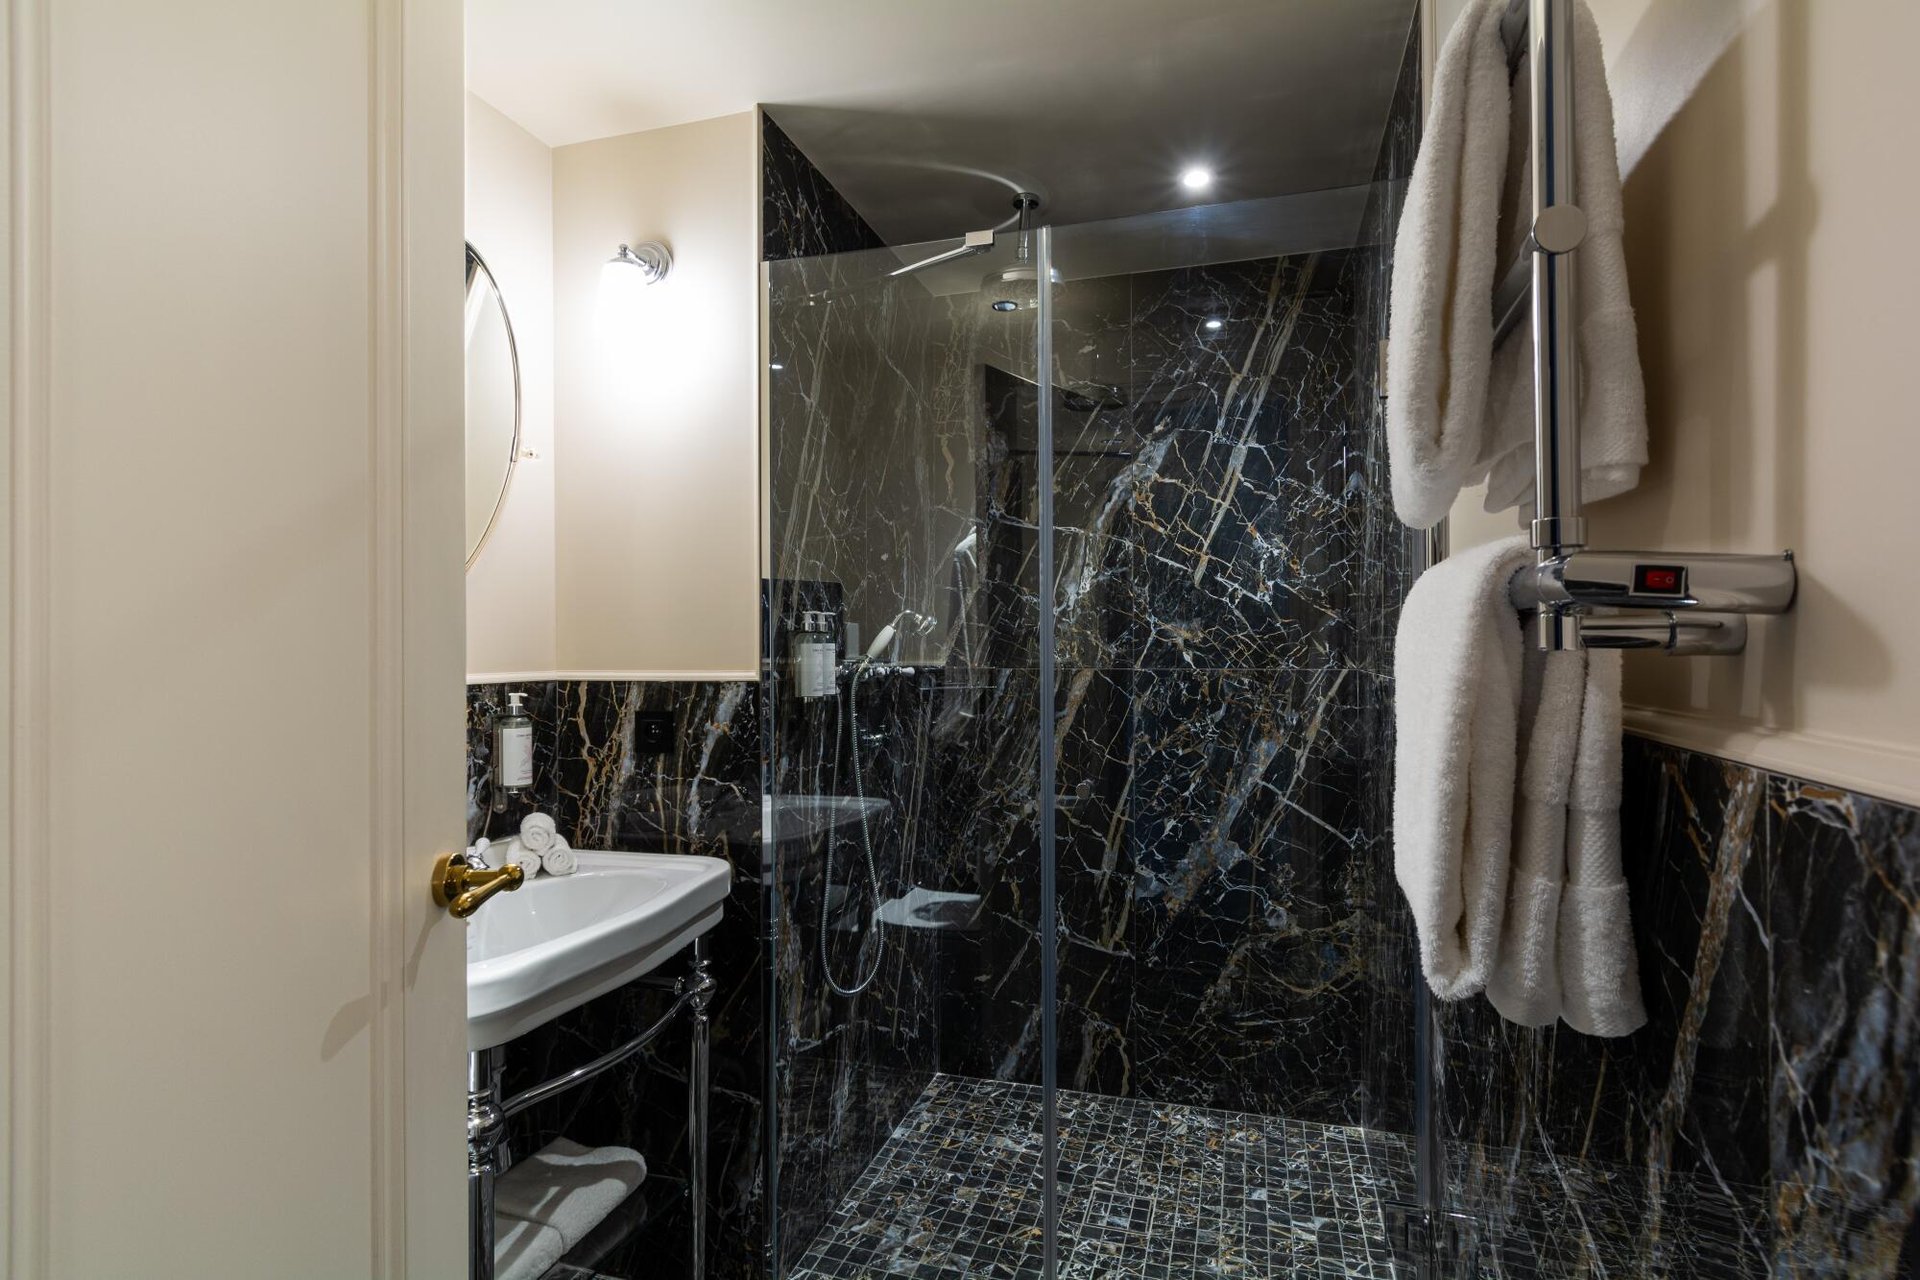 Hôtel & Spa Napoléon Deluxe Room Bathroom Shower